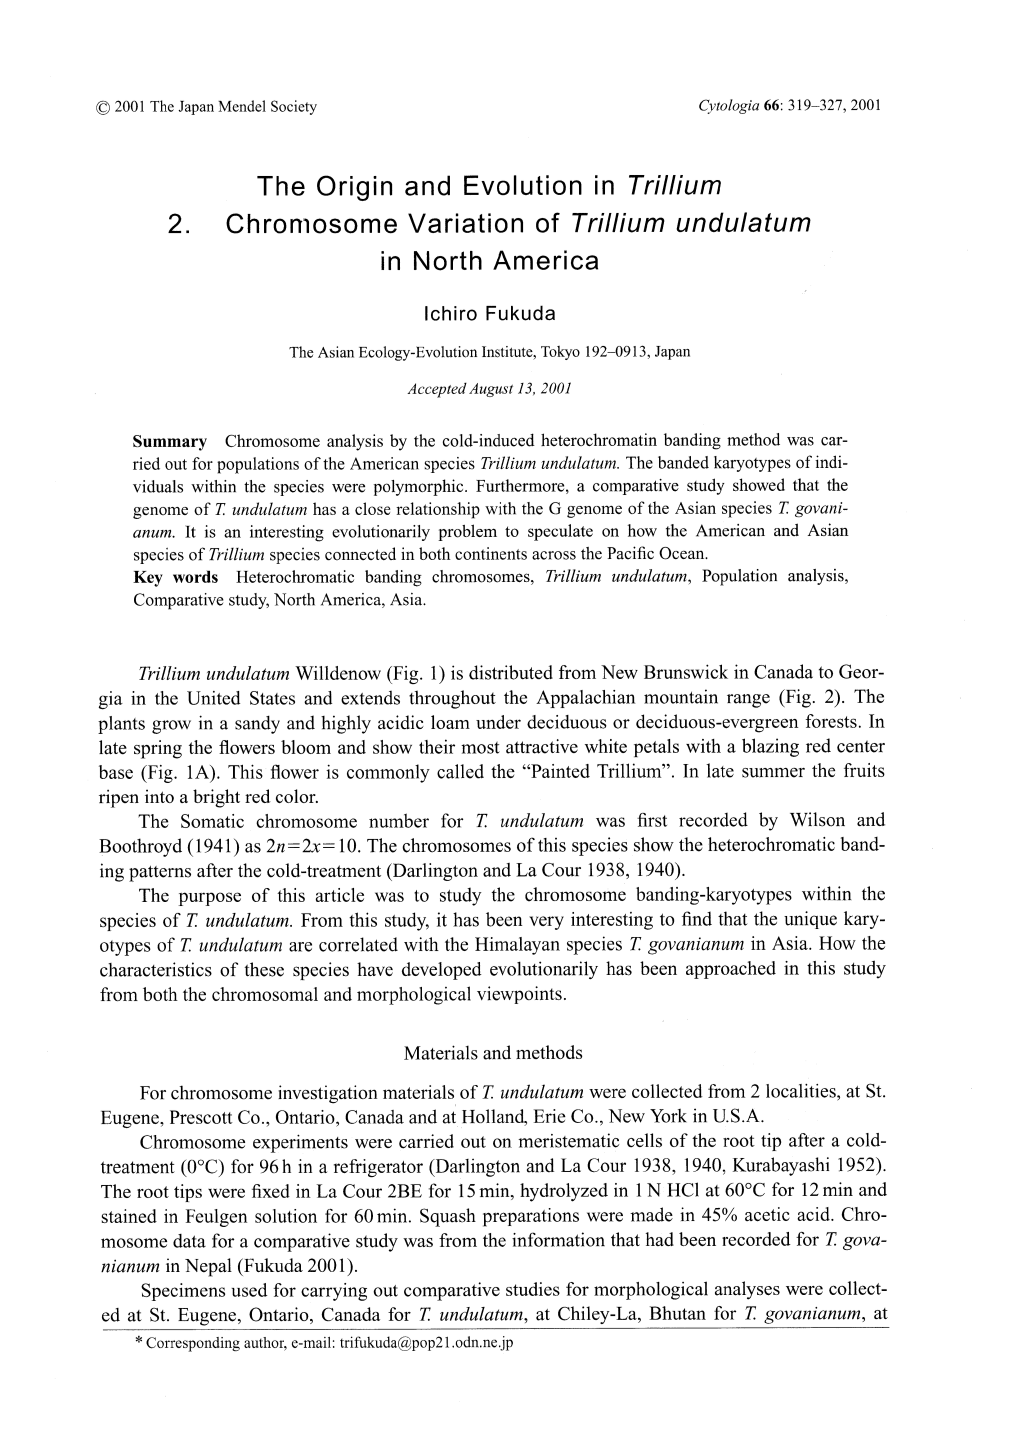 The Origin and Evolution in Trillium 2. Chromosome Variation of Trillium Undulatum in North America